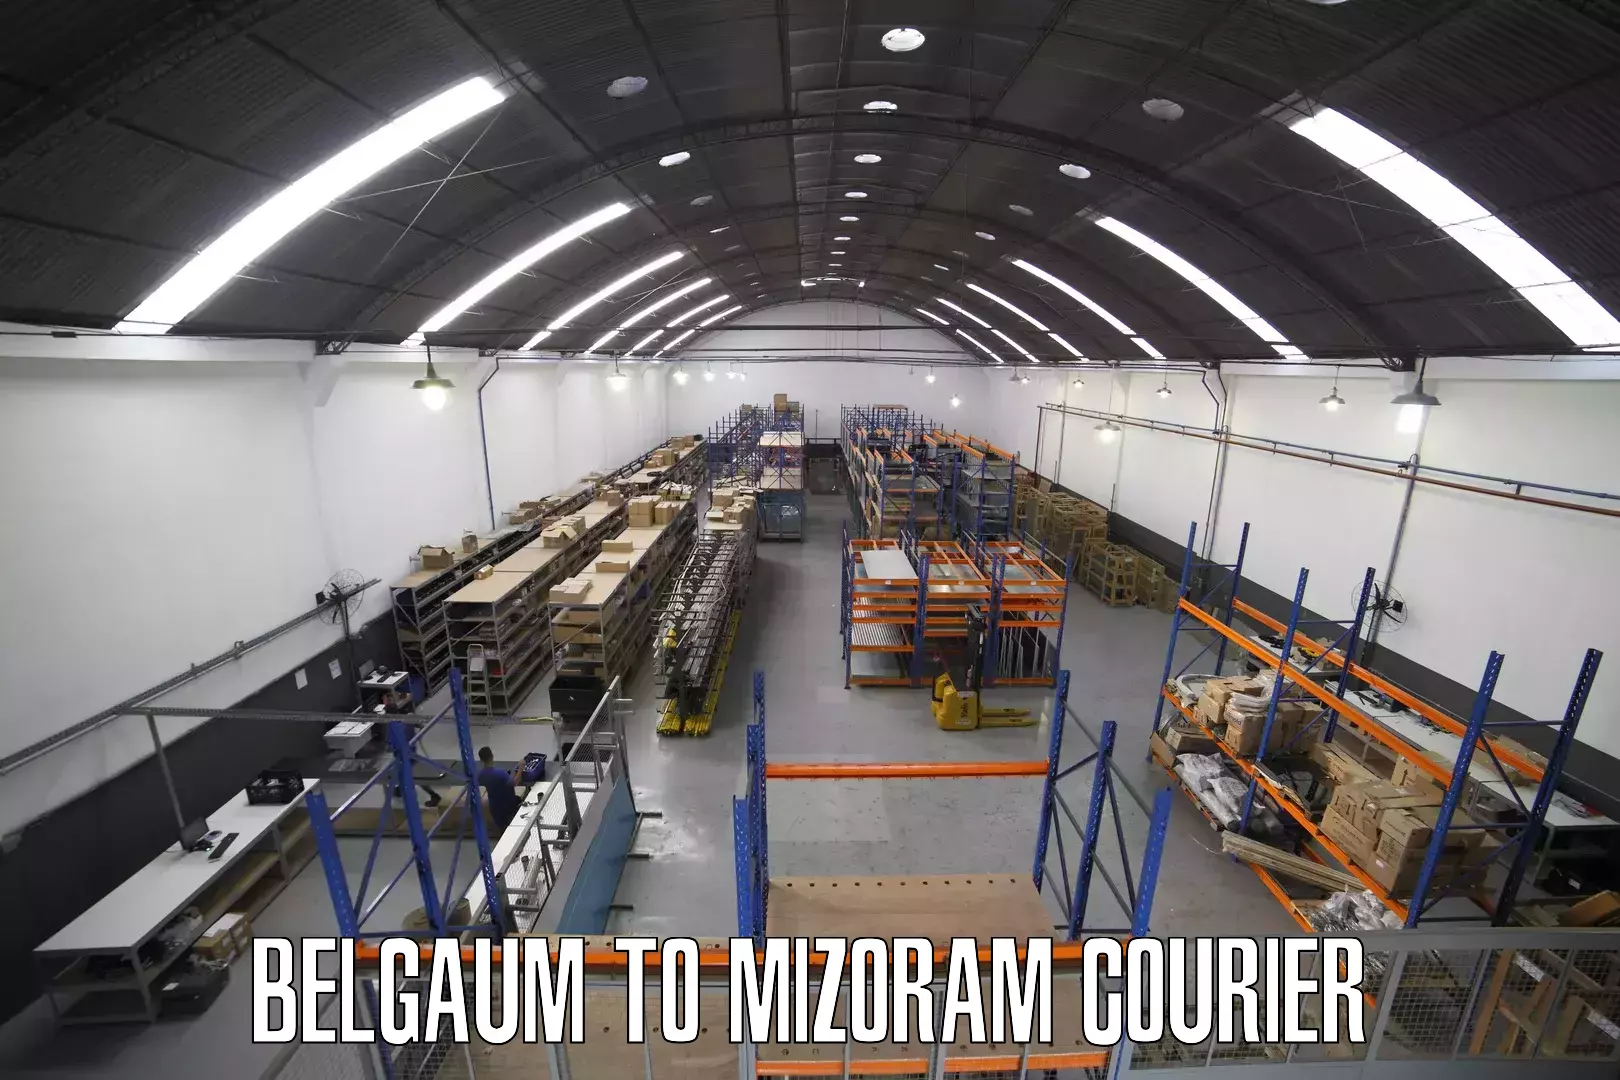 Nationwide courier service Belgaum to Mizoram